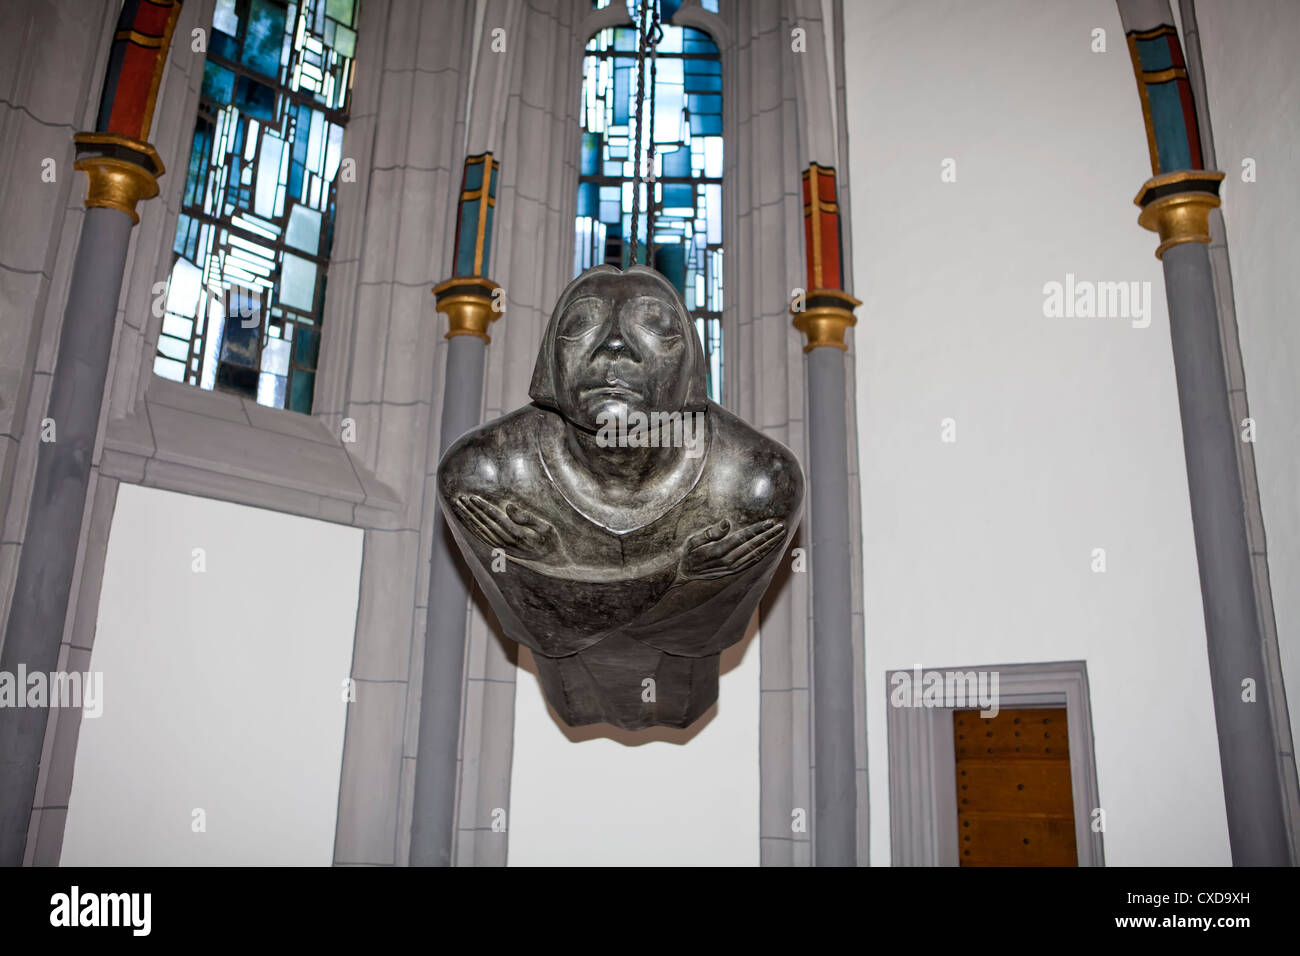 Flotando a Ángel, escultura con las características faciales de Kaethe Kollwitz, por Ernst Barlach Antoniterkirche, iglesia, Alemania Foto de stock